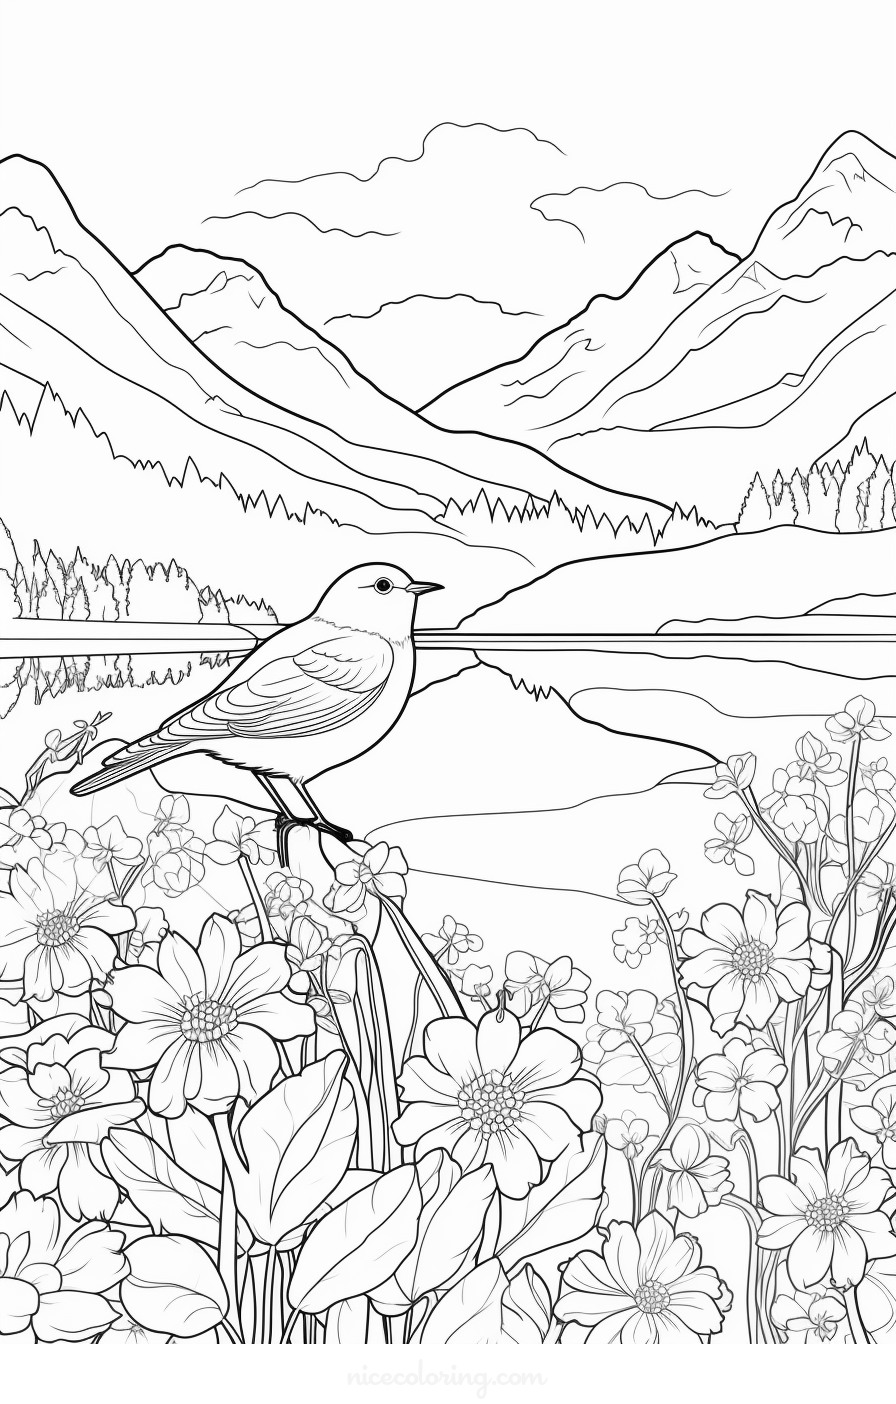 Une scène de divers oiseaux dans un décor forestier à colorier